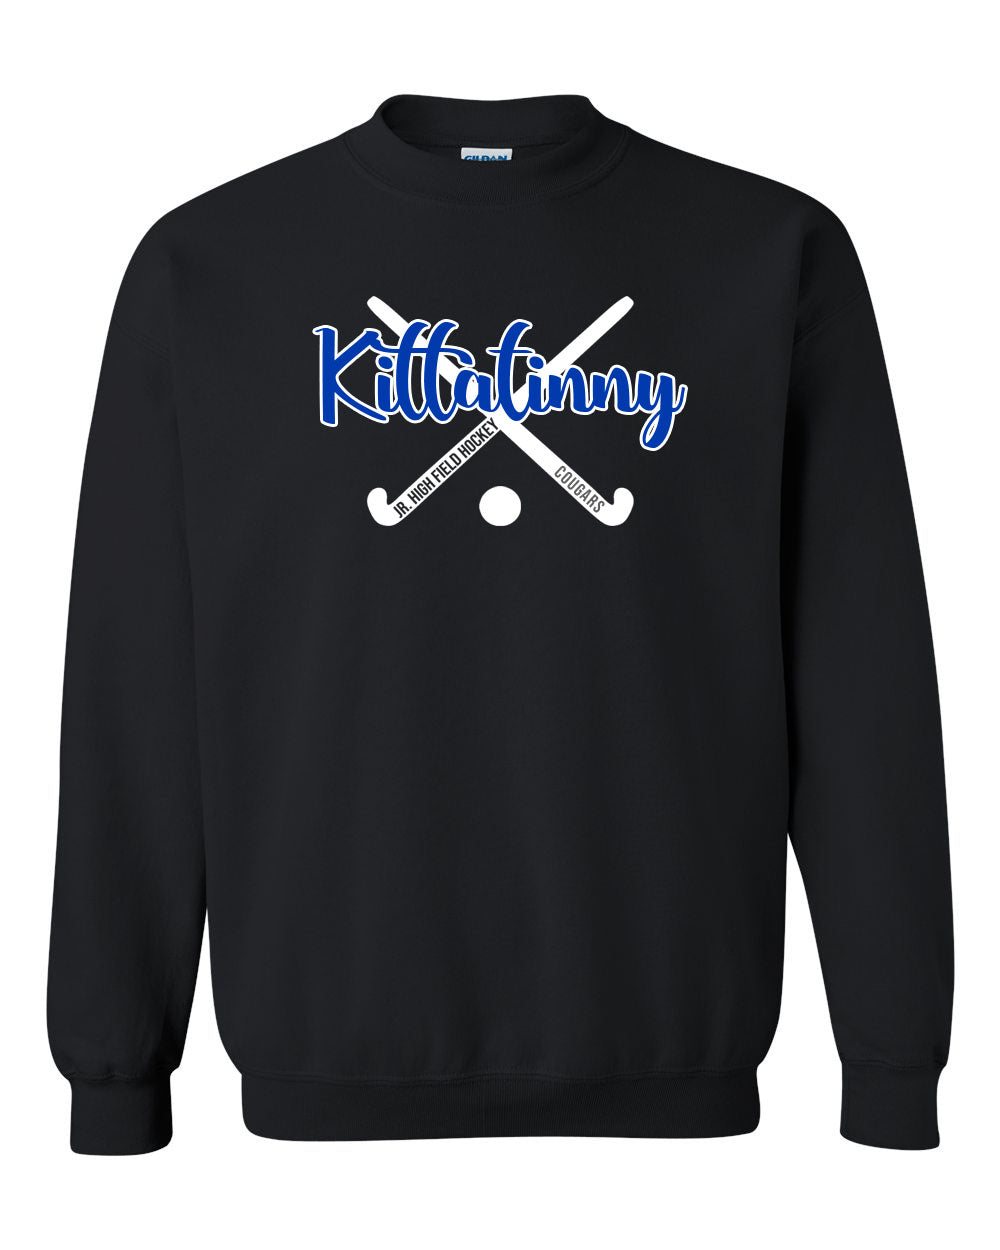 Kittatinny Jr High Field Hockey Design 2 non hooded sweatshirt